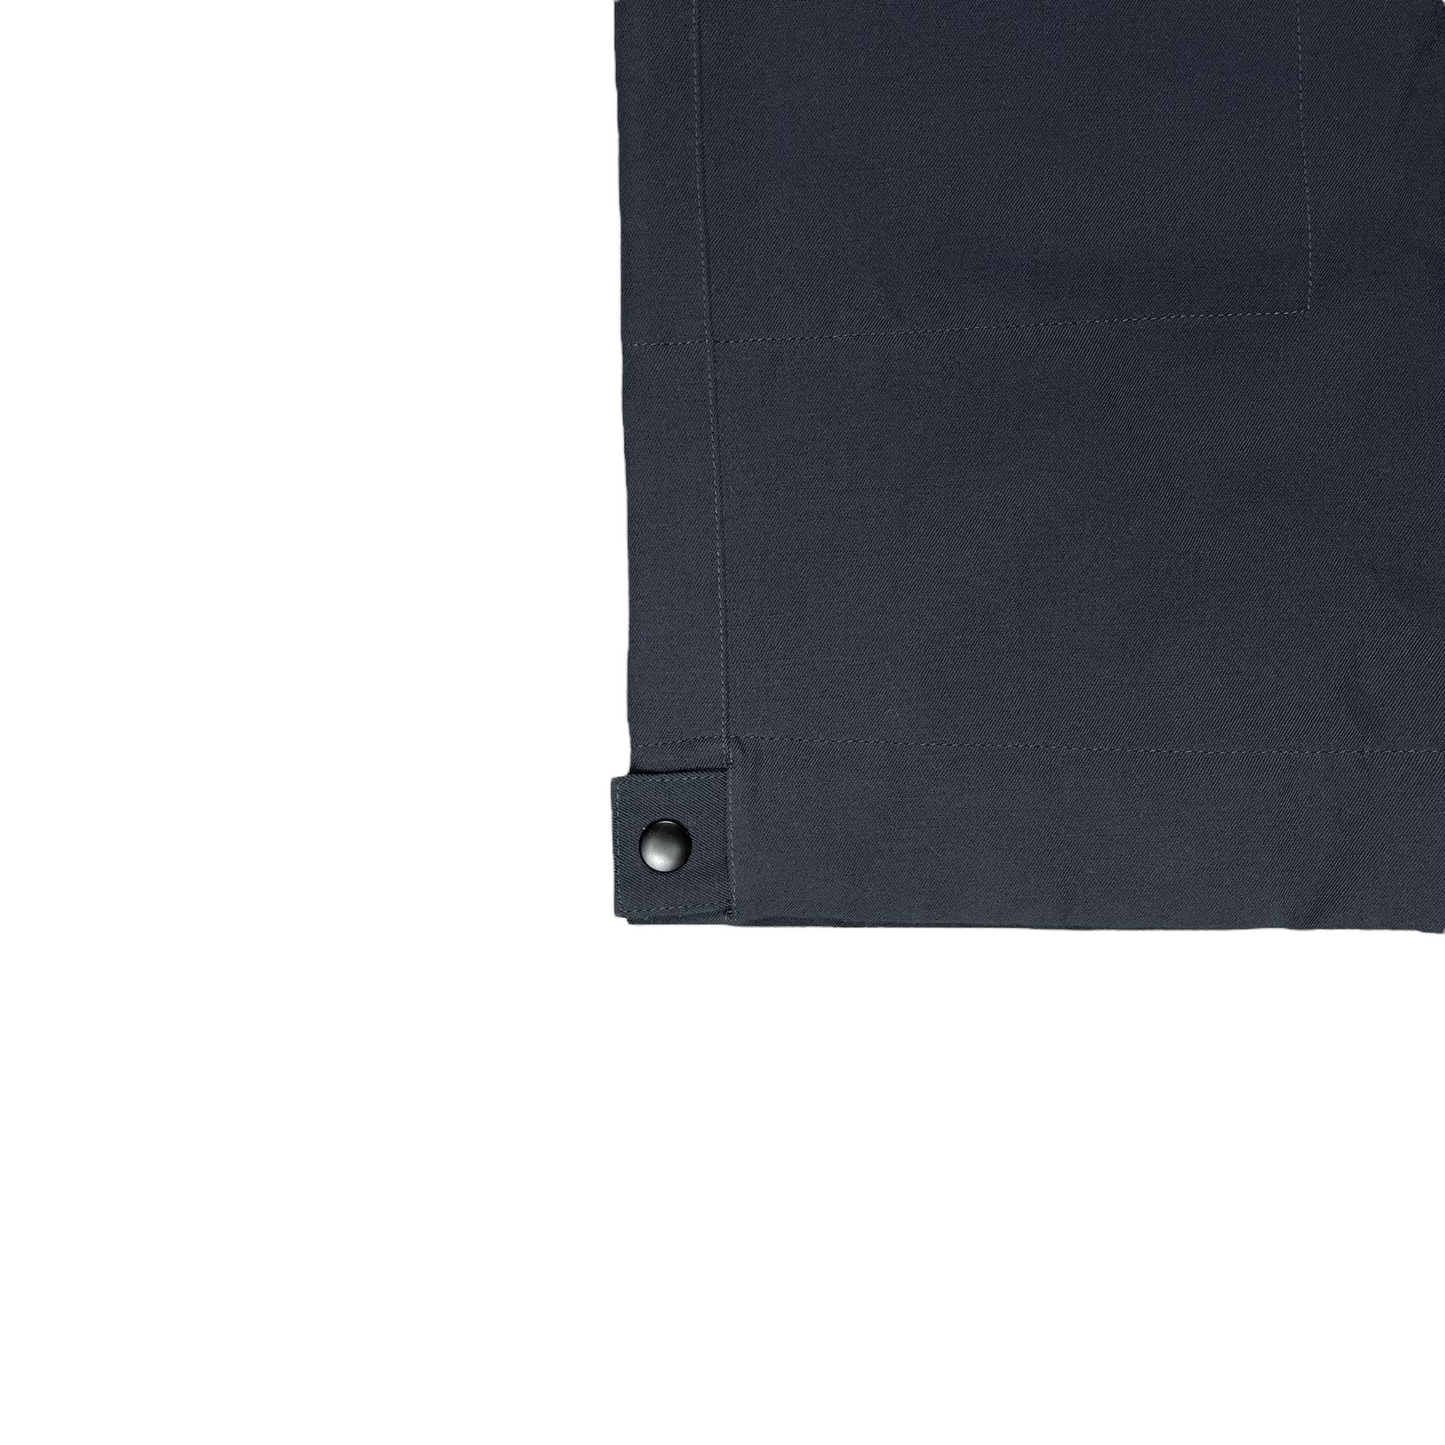 Jil Sander Zip Detail Trousers - AW19